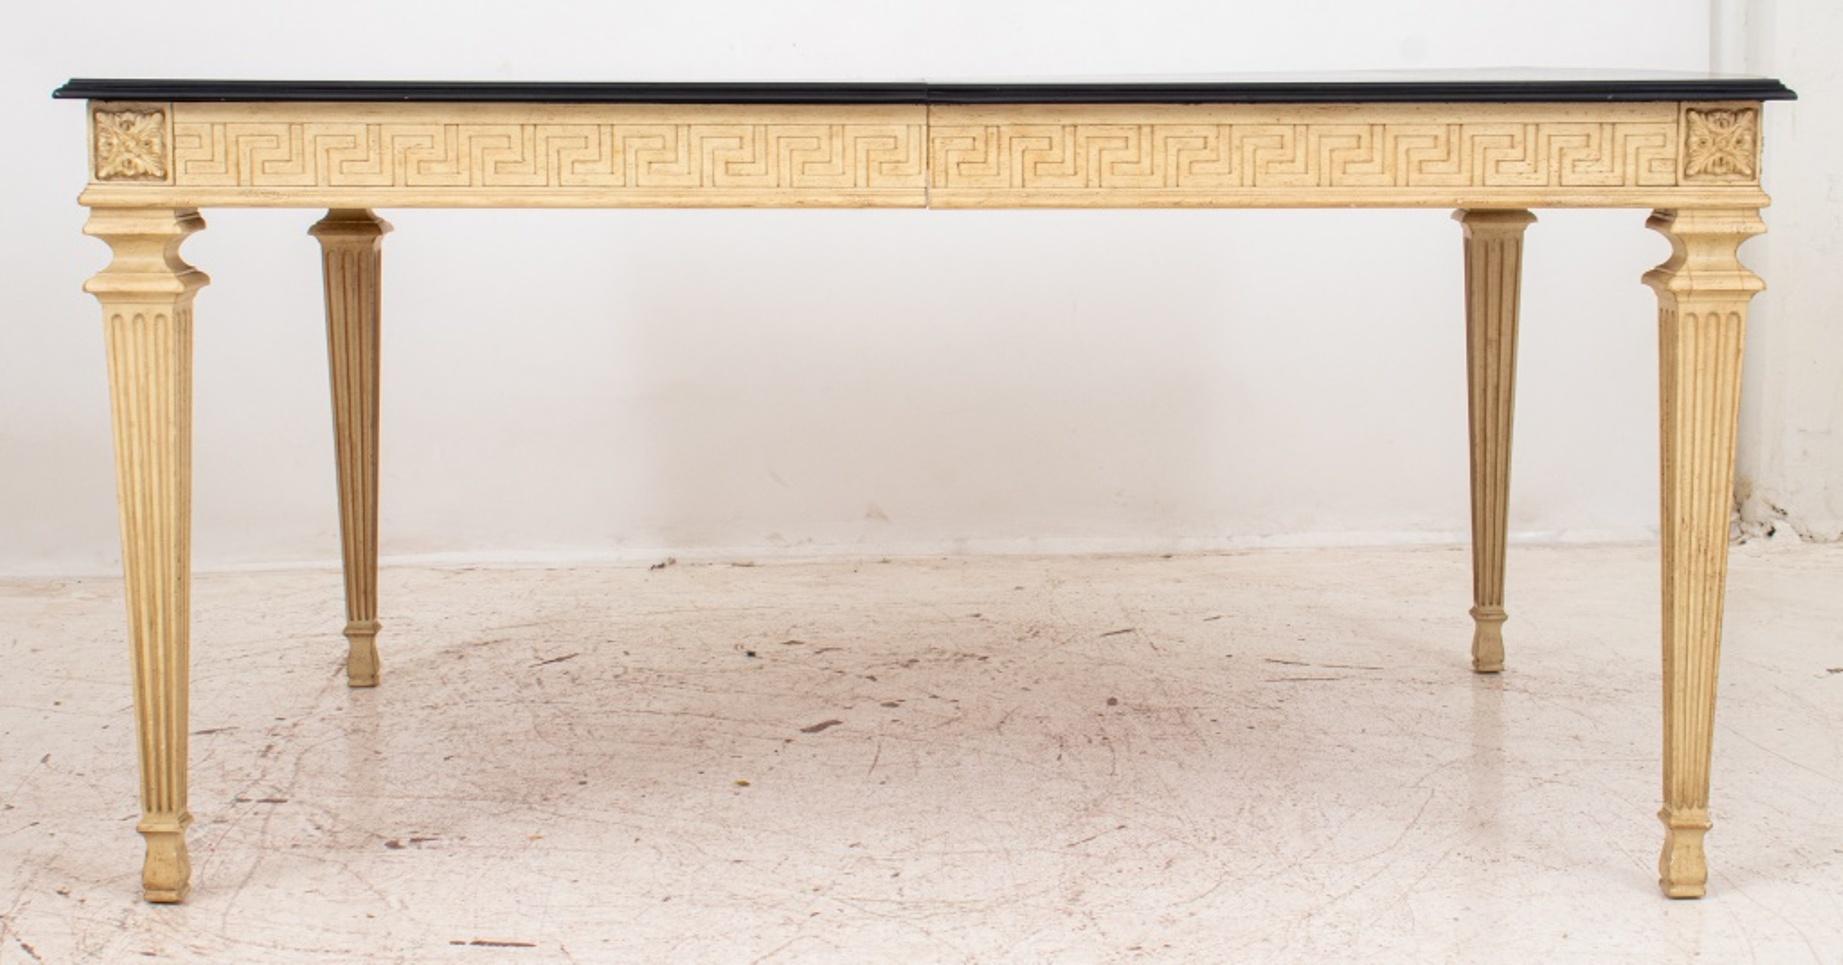 Table de salle à manger de style Louis XVI à rallonges peintes en blanc, le plateau rectangulaire façonné surmontant un tablier décoré d'un motif de méandre ou de clé grecque, avec des coins à tête de patera sur des pieds cannelés carrés effilés se